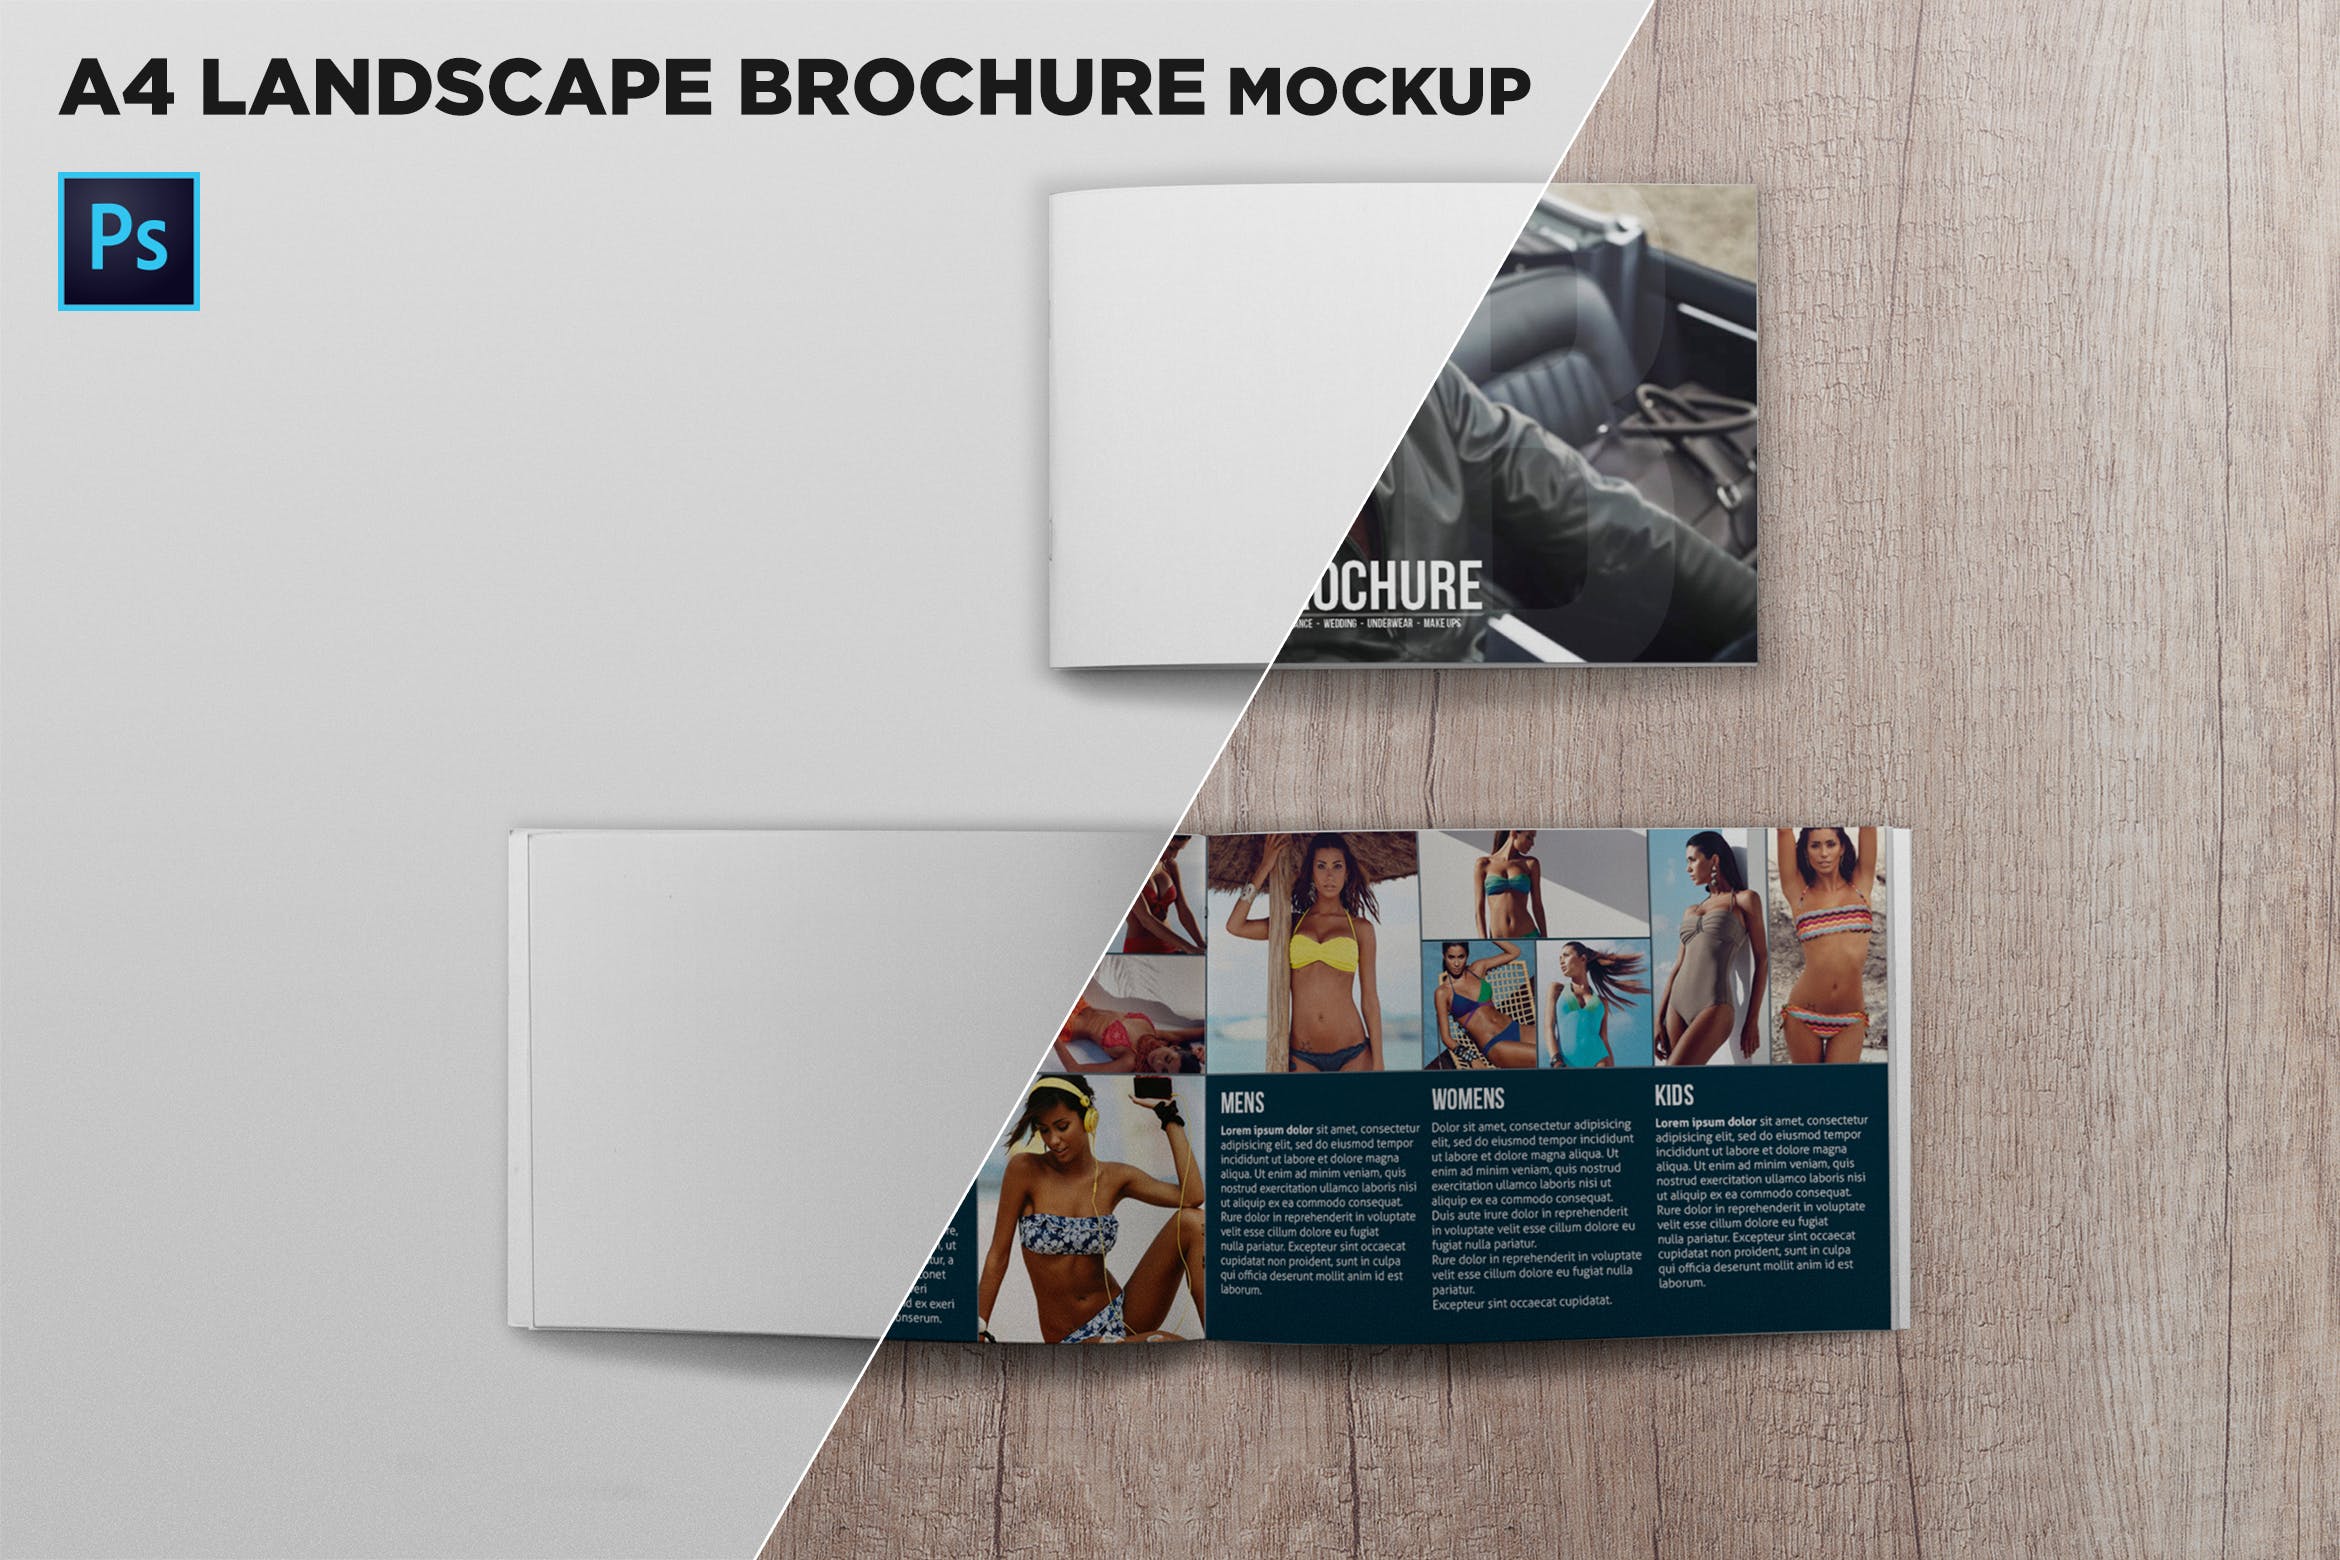 宣传画册/企业画册封面&内页版式设计效果图样机第一素材精选 Cover & Open Landscape Brochure Mockup Top View插图